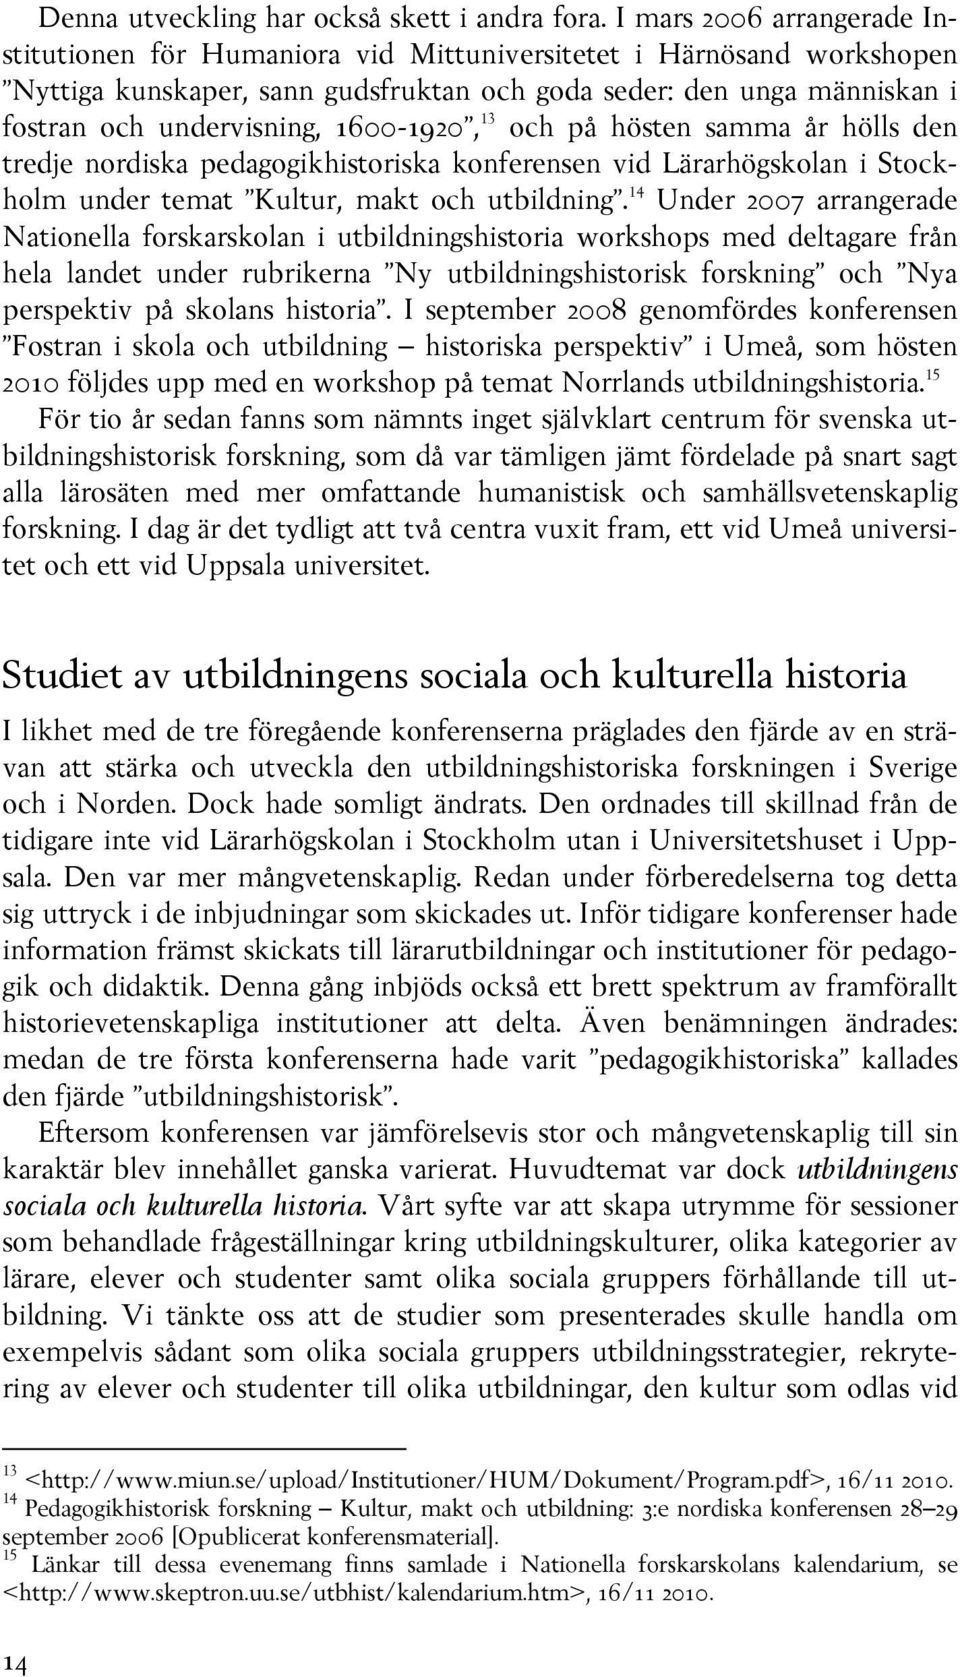 1600-1920, 13 och på hösten samma år hölls den tredje nordiska pedagogikhistoriska konferensen vid Lärarhögskolan i Stockholm under temat Kultur, makt och utbildning.